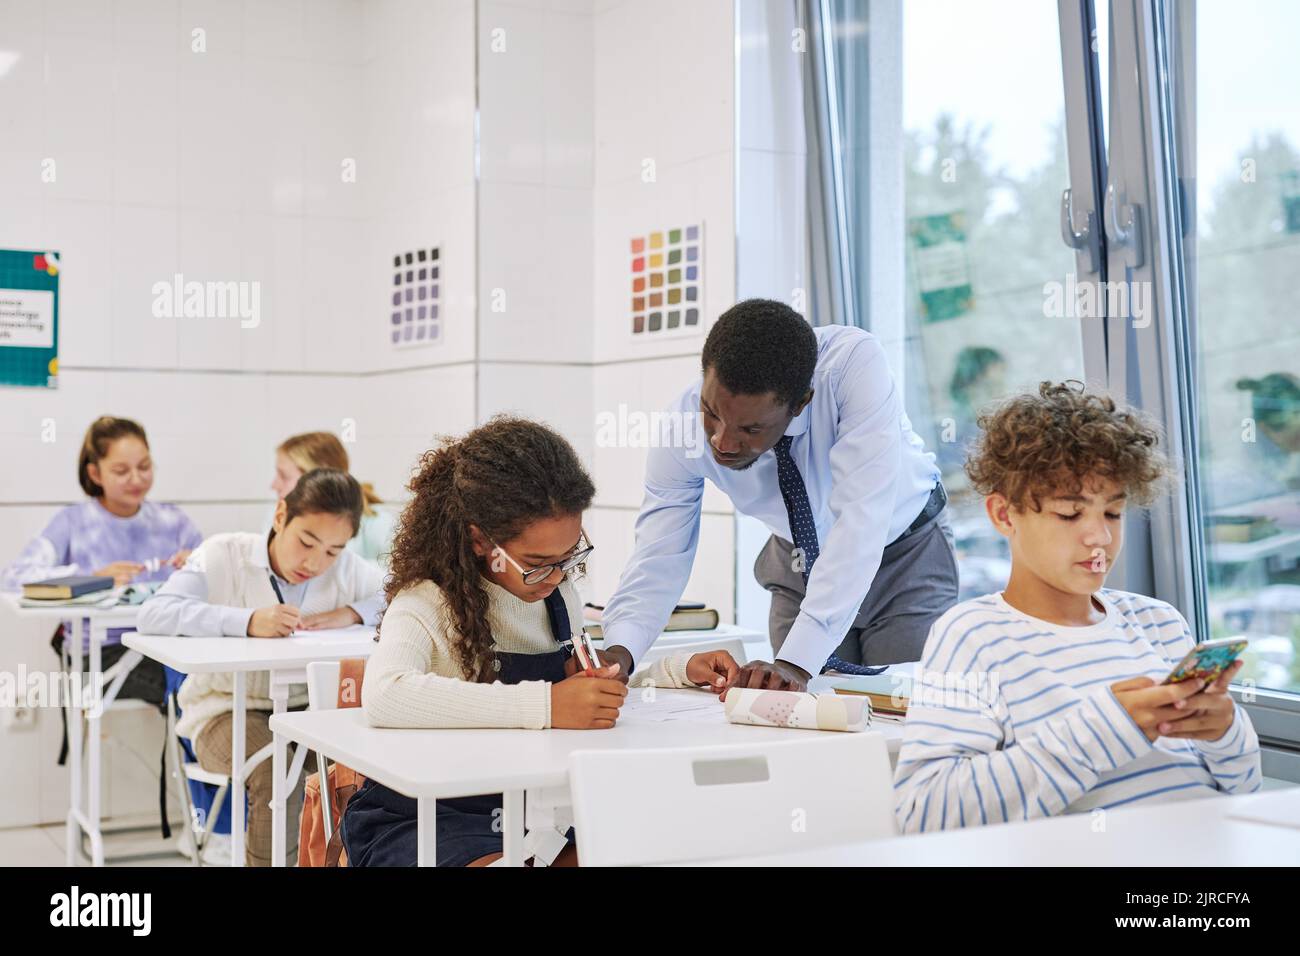 Porträt eines schwarzen männlichen Lehrers, der mit Kindern arbeitet, die im Klassenzimmer einen Test machen Stockfoto